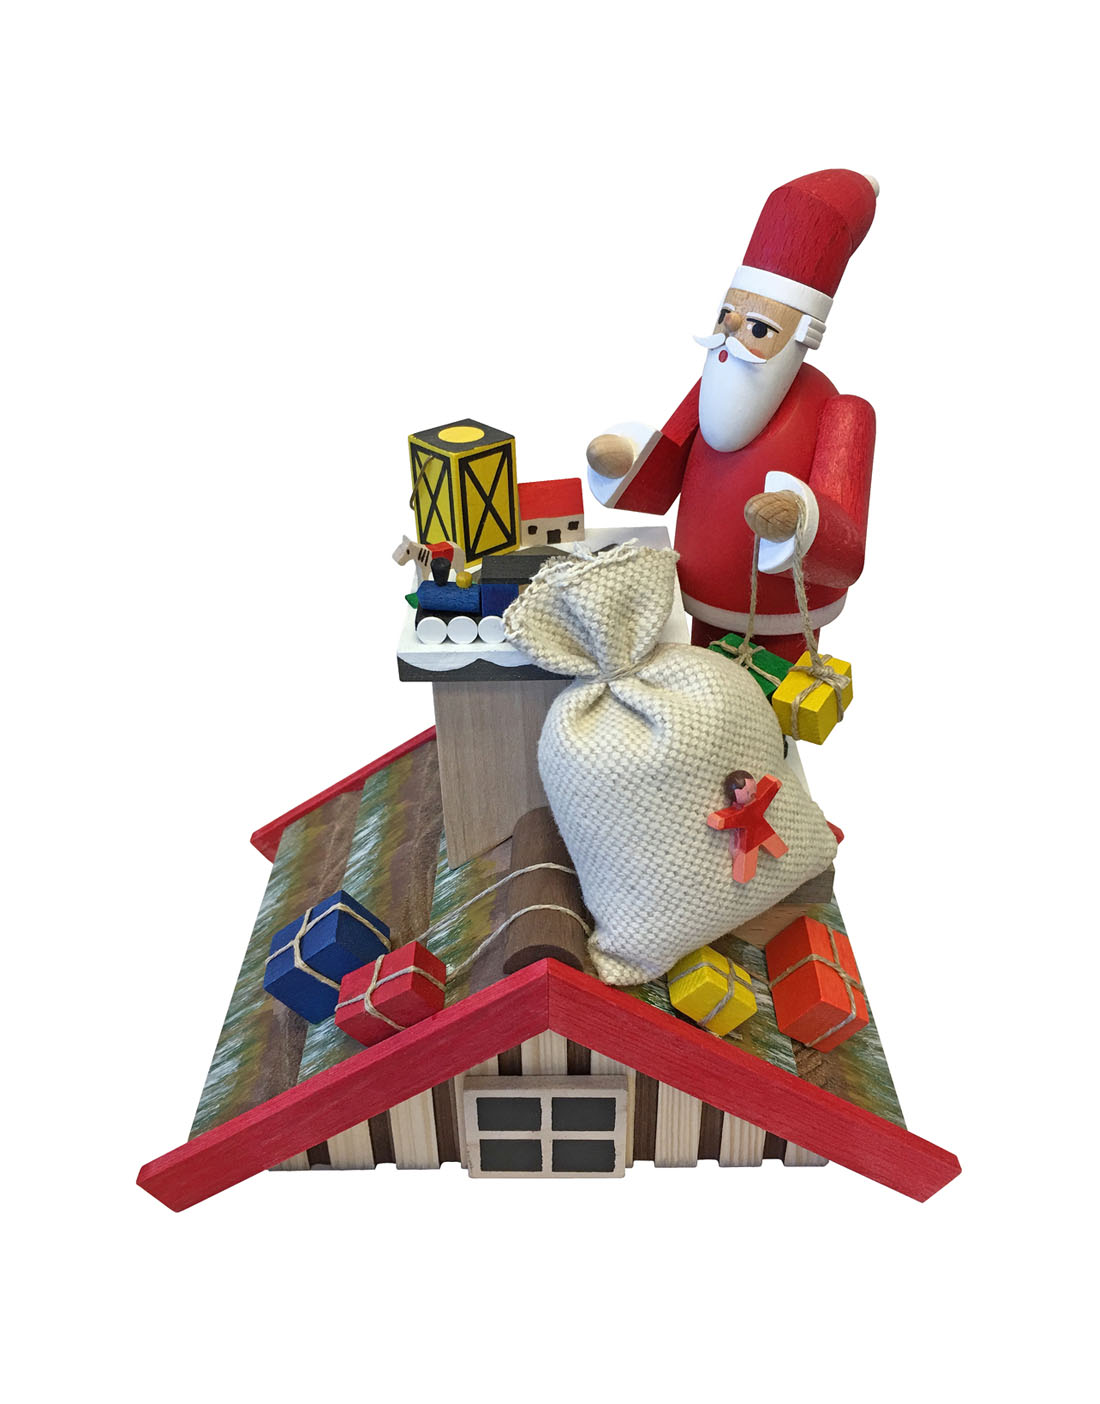 2601 - Richard Glaesser Incense Burner - Santa on Roof - Presents - 8"H x 7"W x 4.75"D